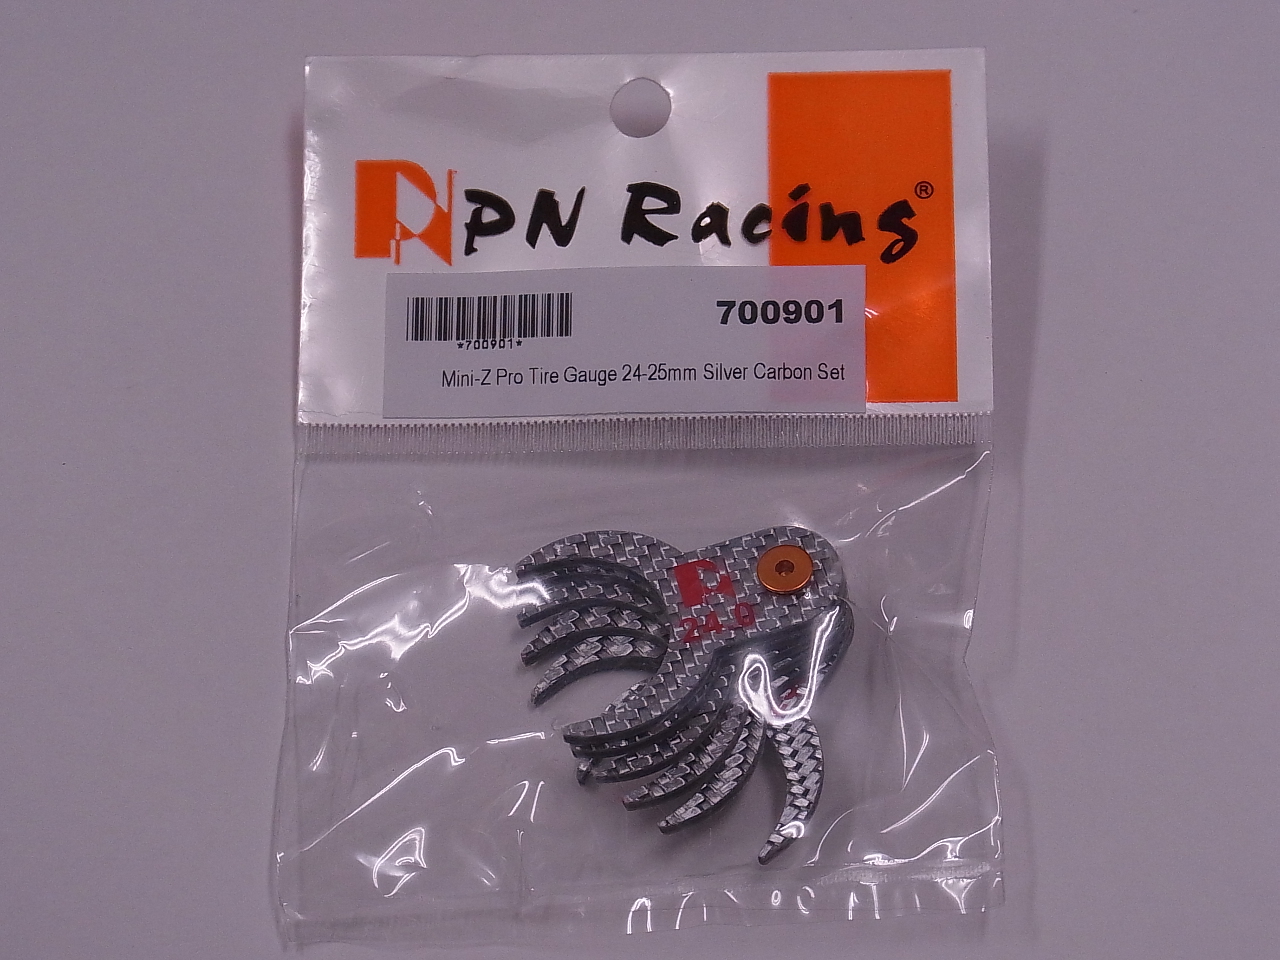  PN Racing Mini-Zプロ・タイヤゲージ（シルバー・カーボン仕様）: 24-25mm 